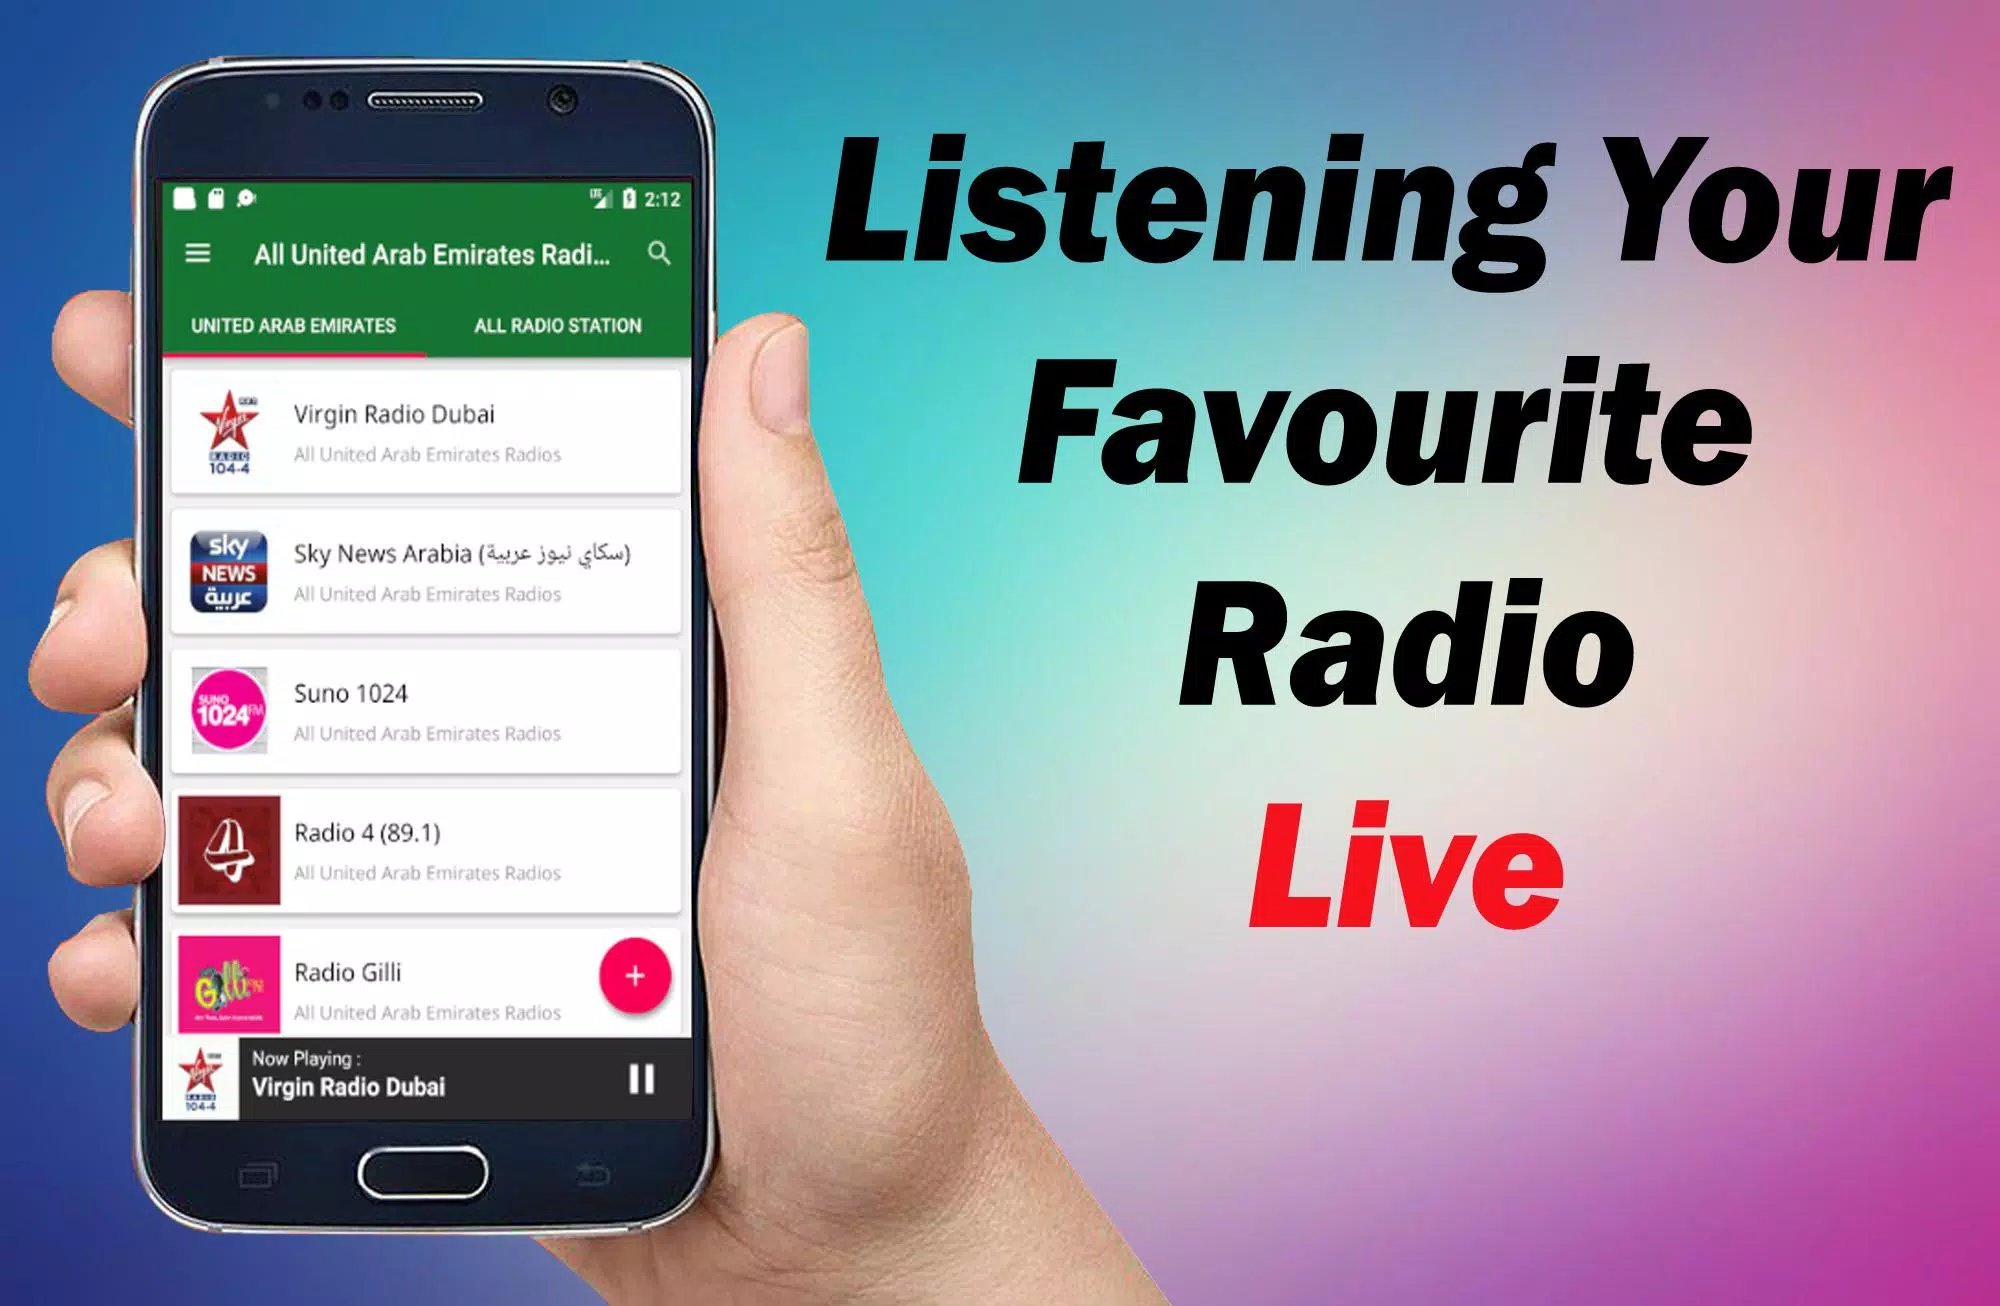 Arab Emirate Radios - UAE FM - Virgin Radio Dubai APK for Android Download